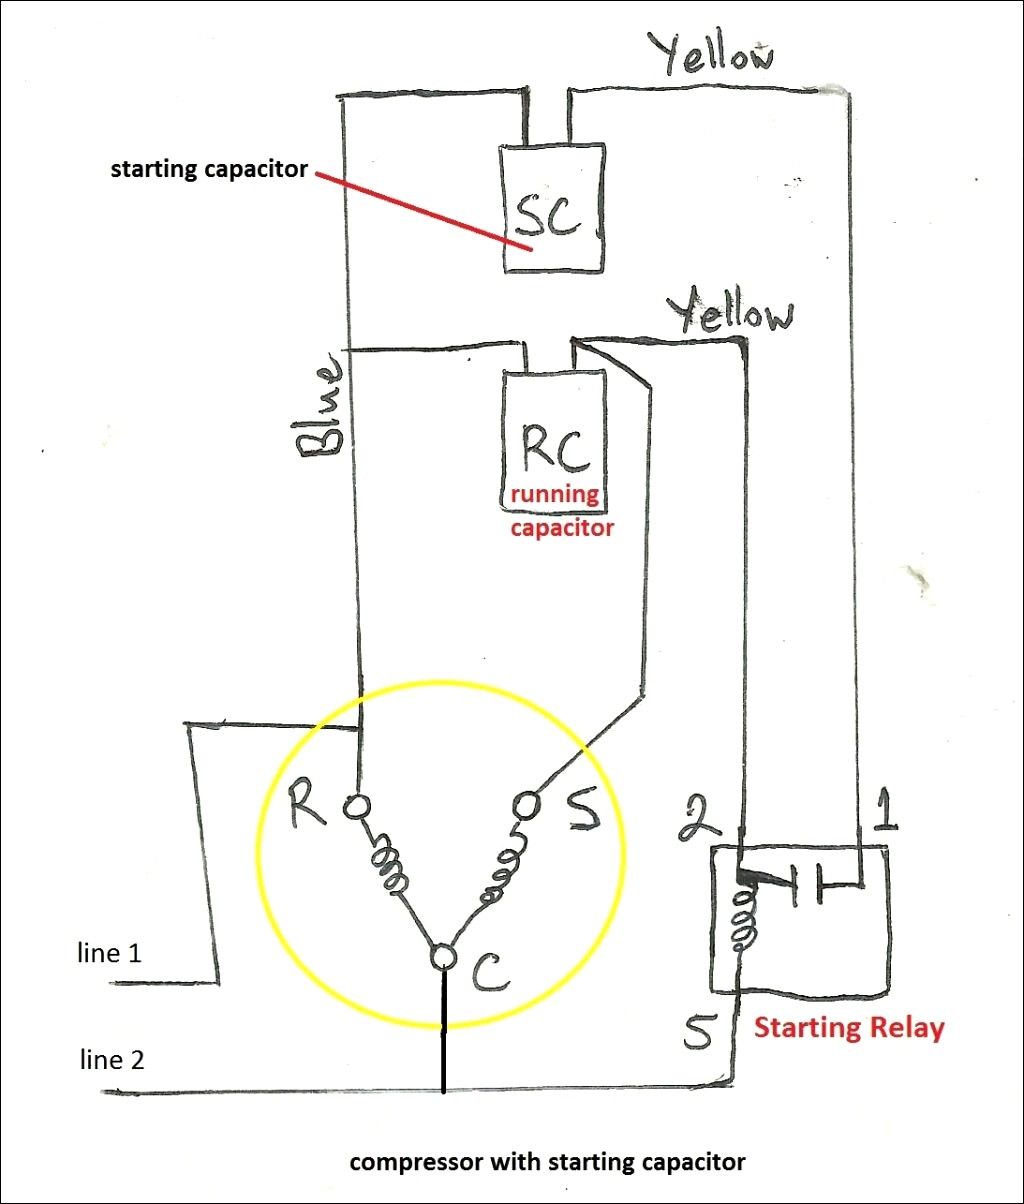 baldor motors wiring diagram run capacitor wiring diagram inspirational baldor grinder wiringgram of baldor motors wiring diagram